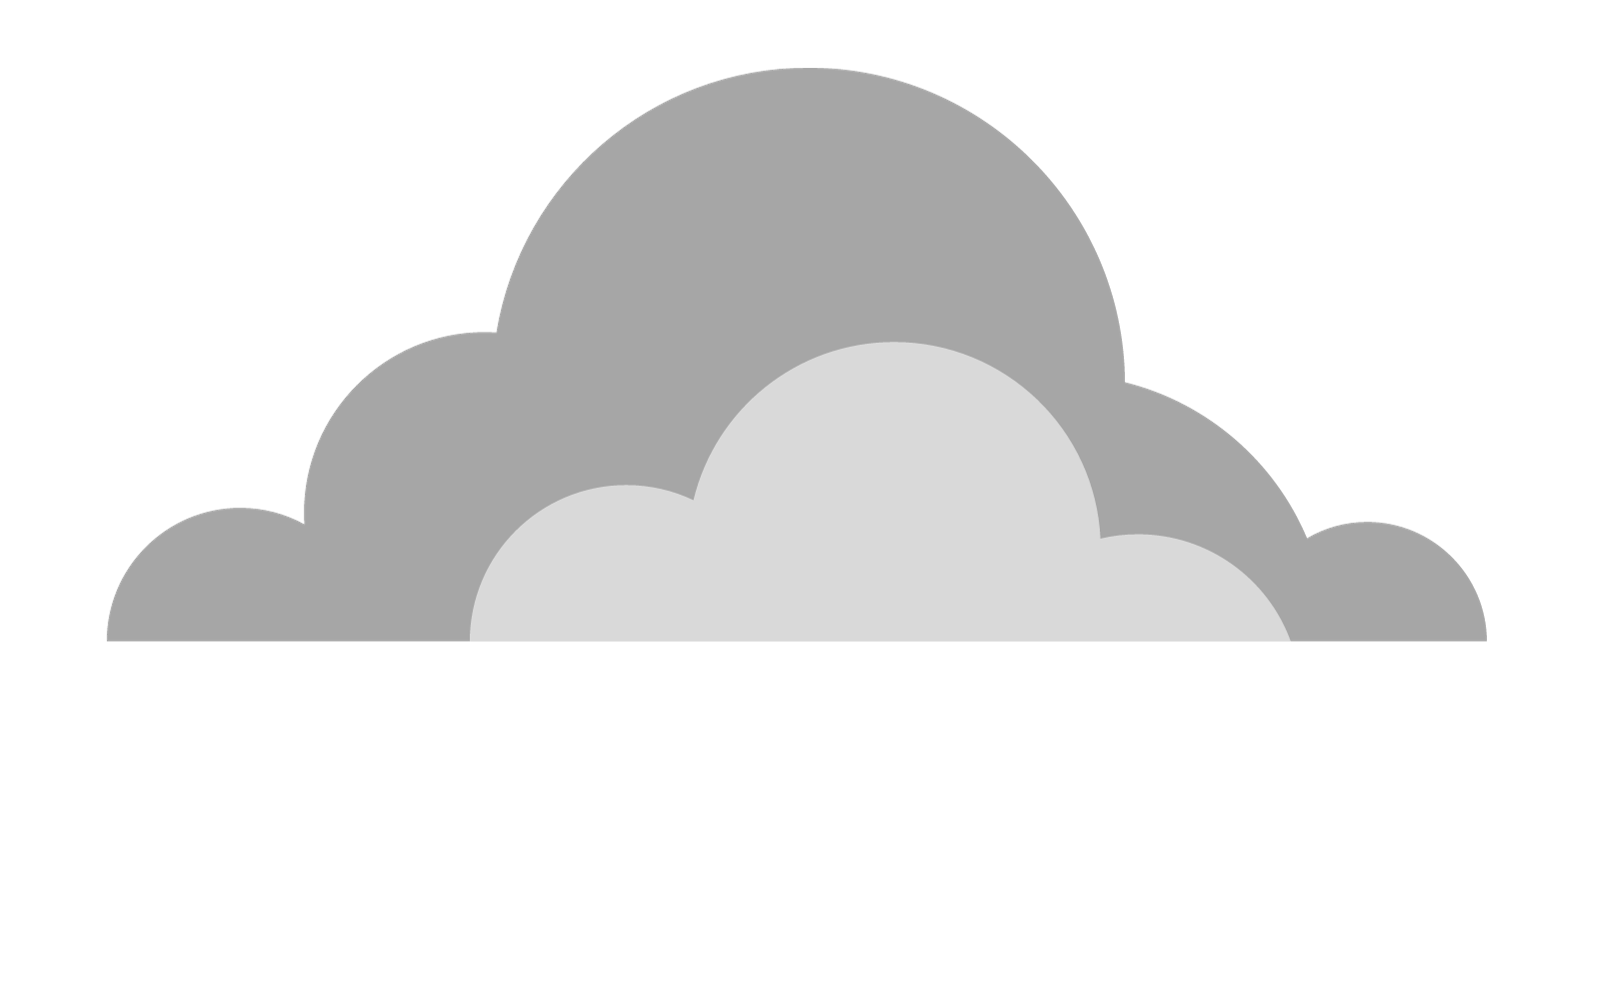 Cloud-crate